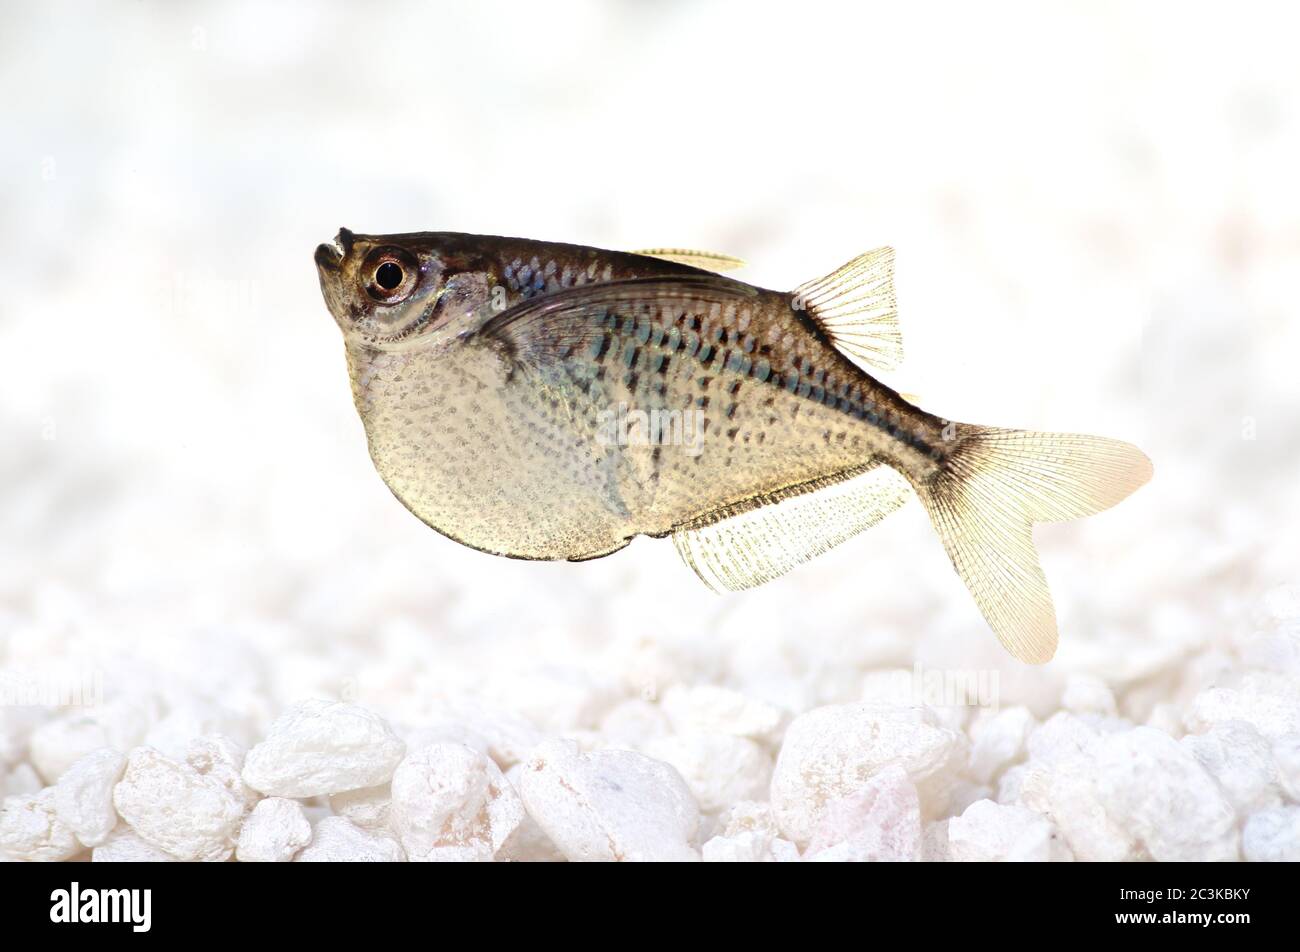 Hatchet fish immagini e fotografie stock ad alta risoluzione - Alamy